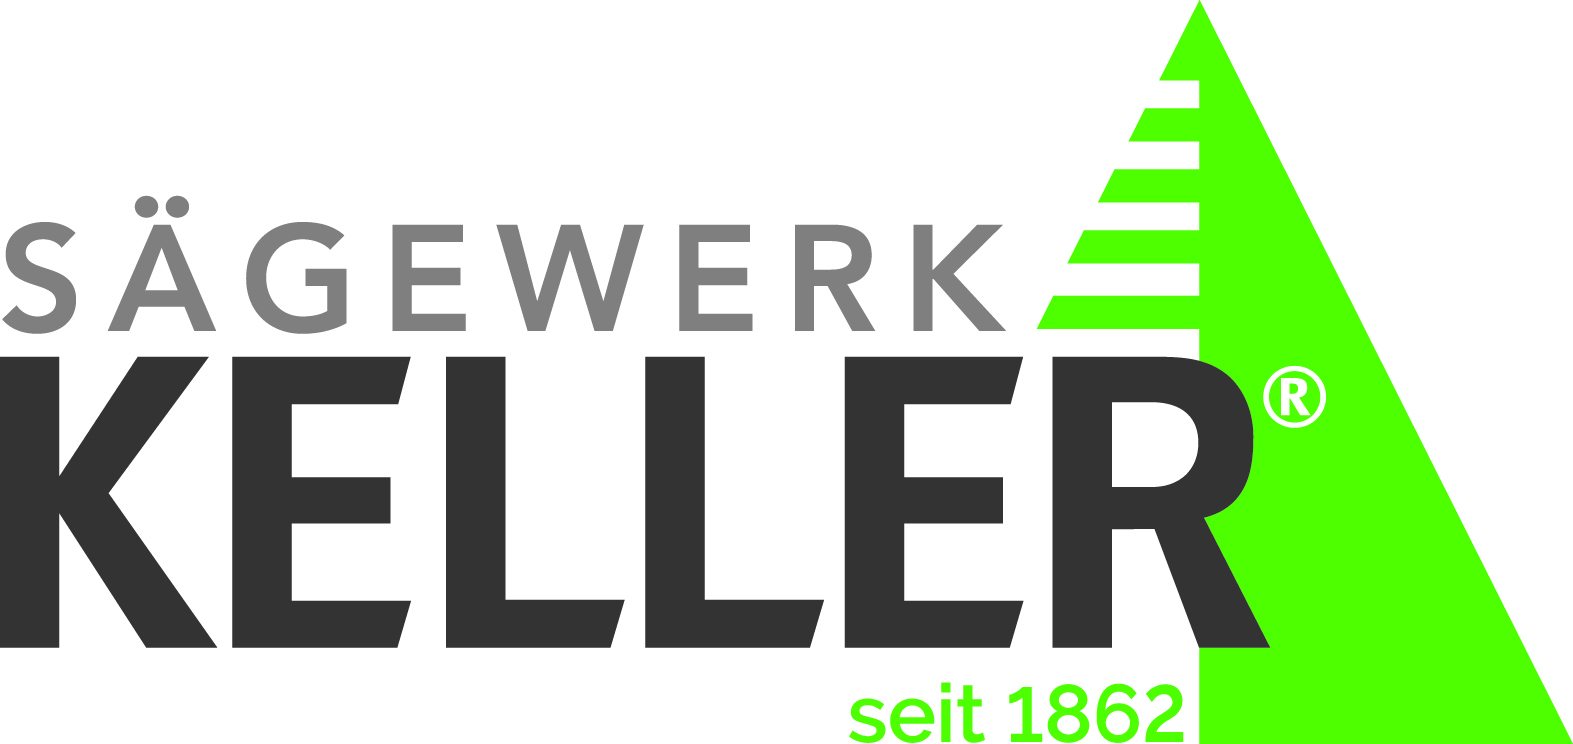 Hermann Keller GmbH